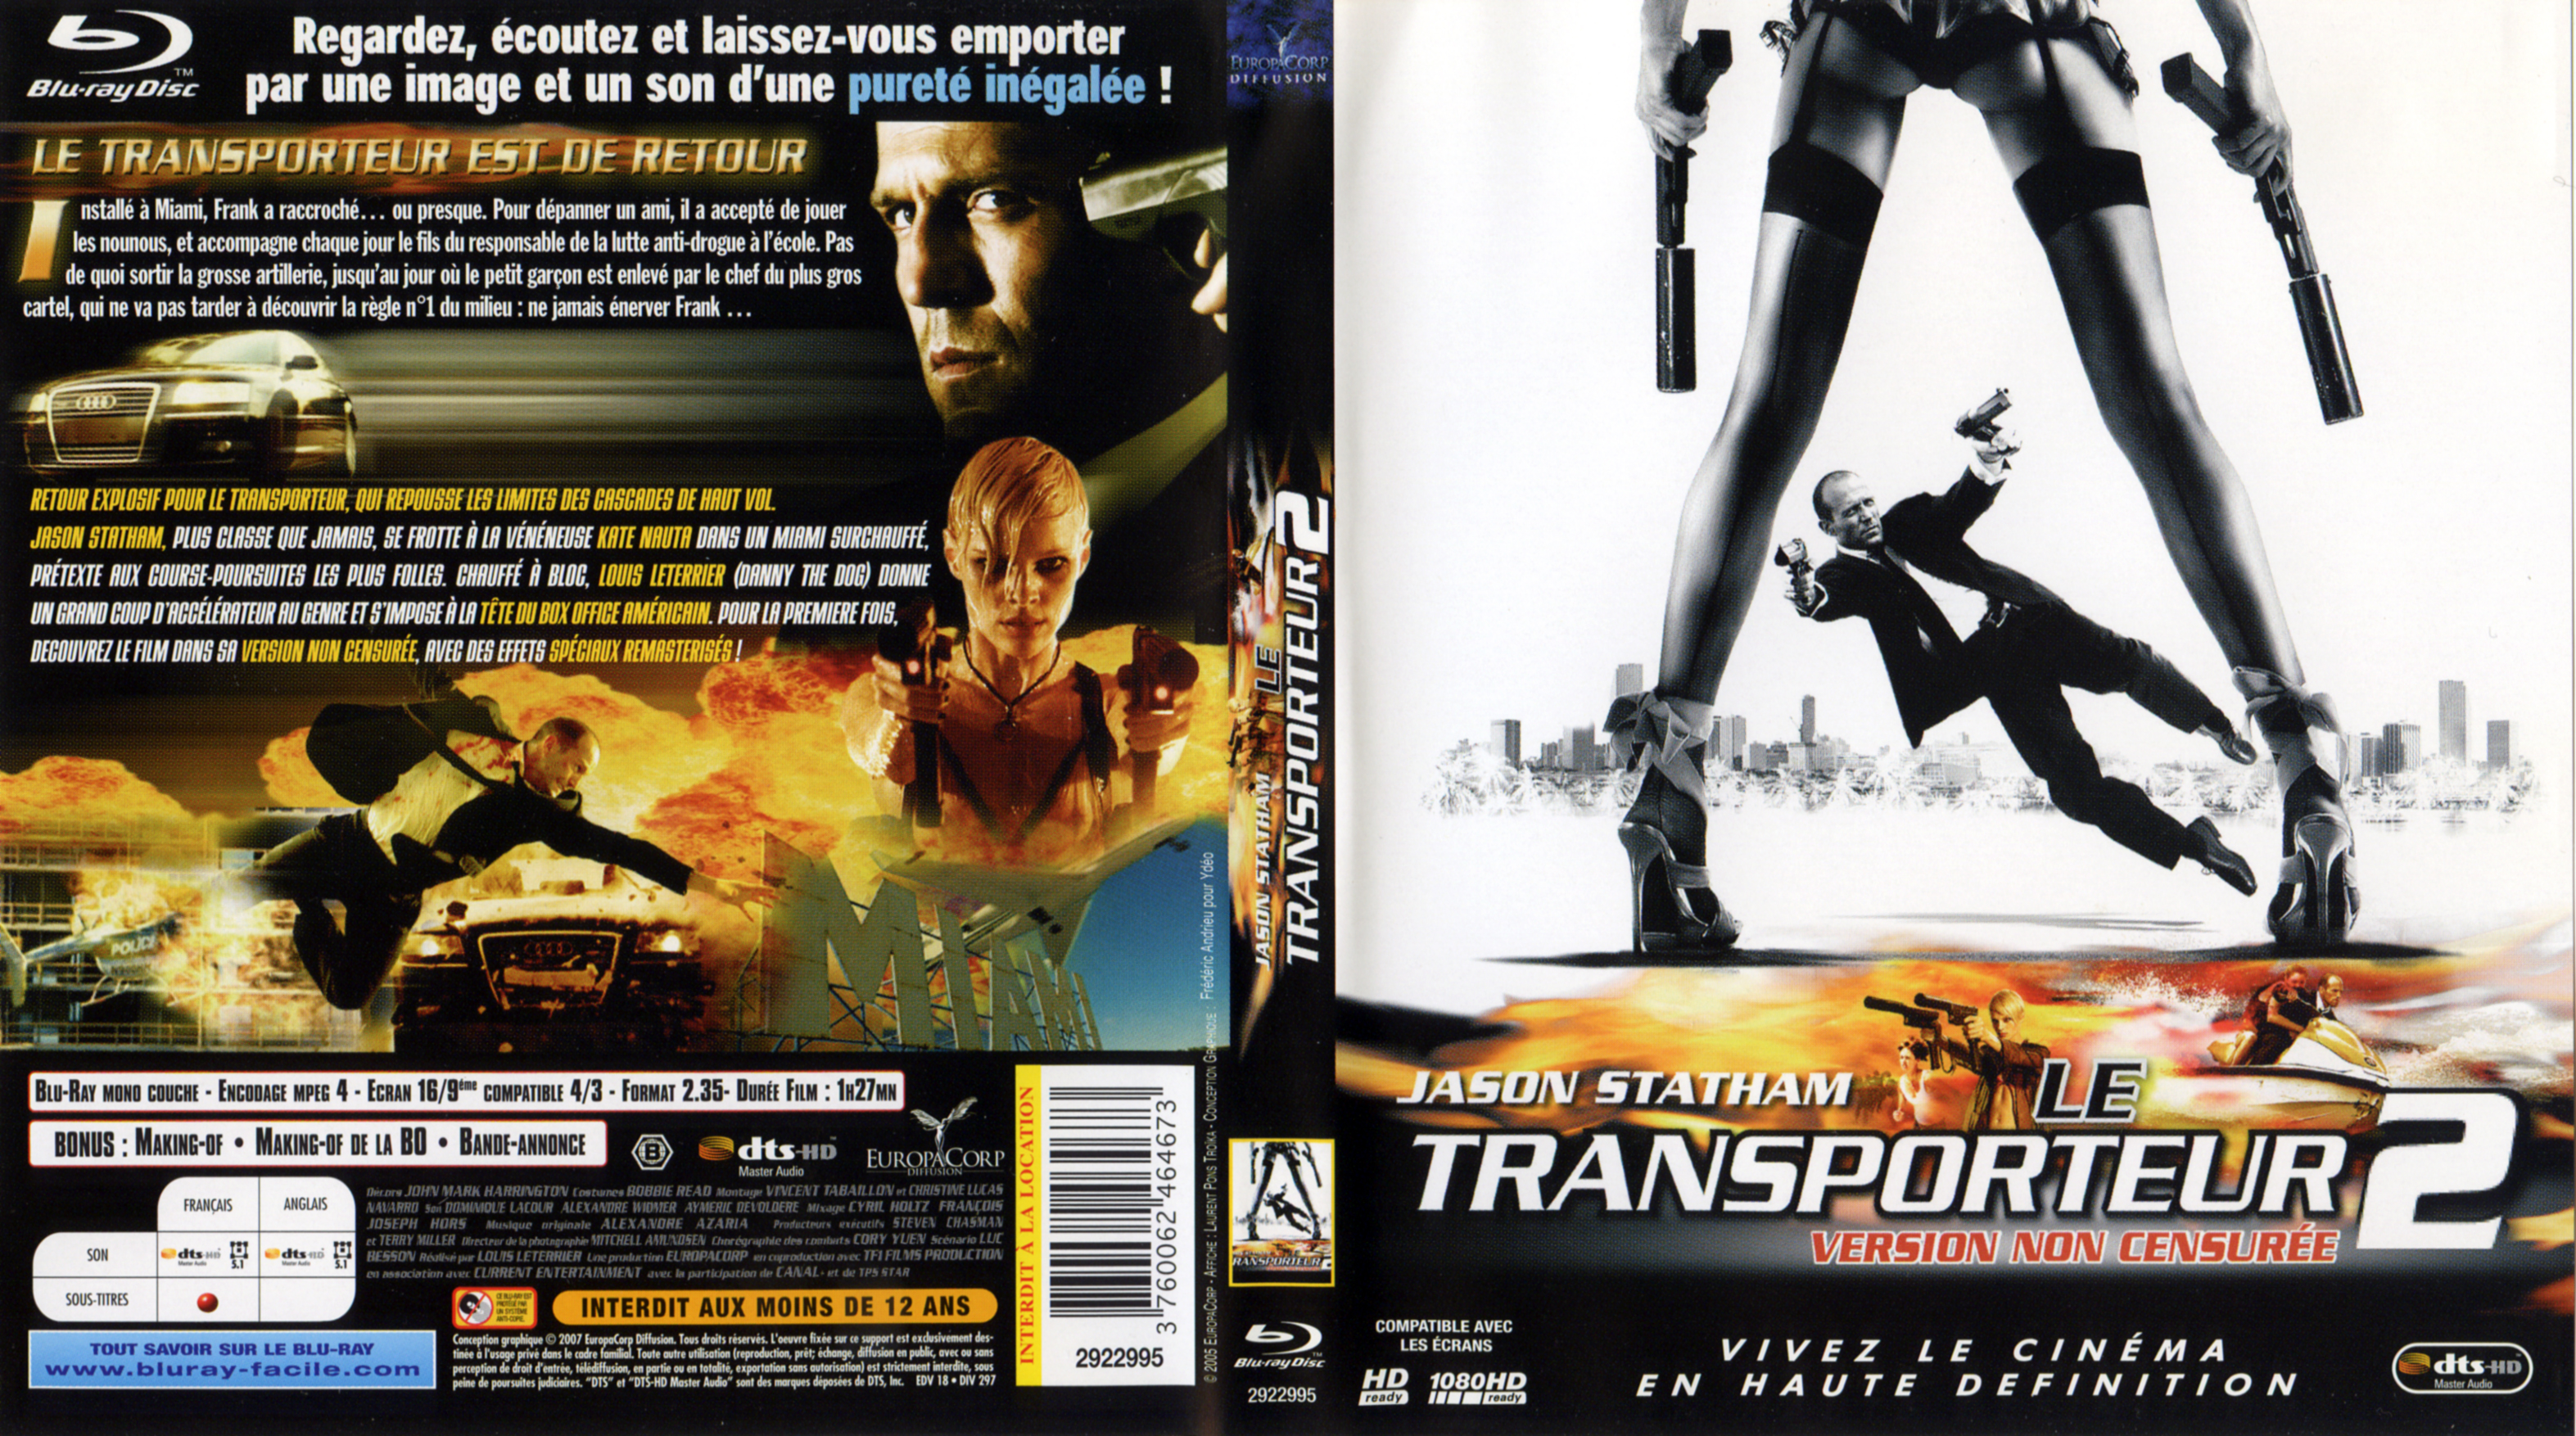 Jaquette DVD Le transporteur 2 (BLU-RAY)